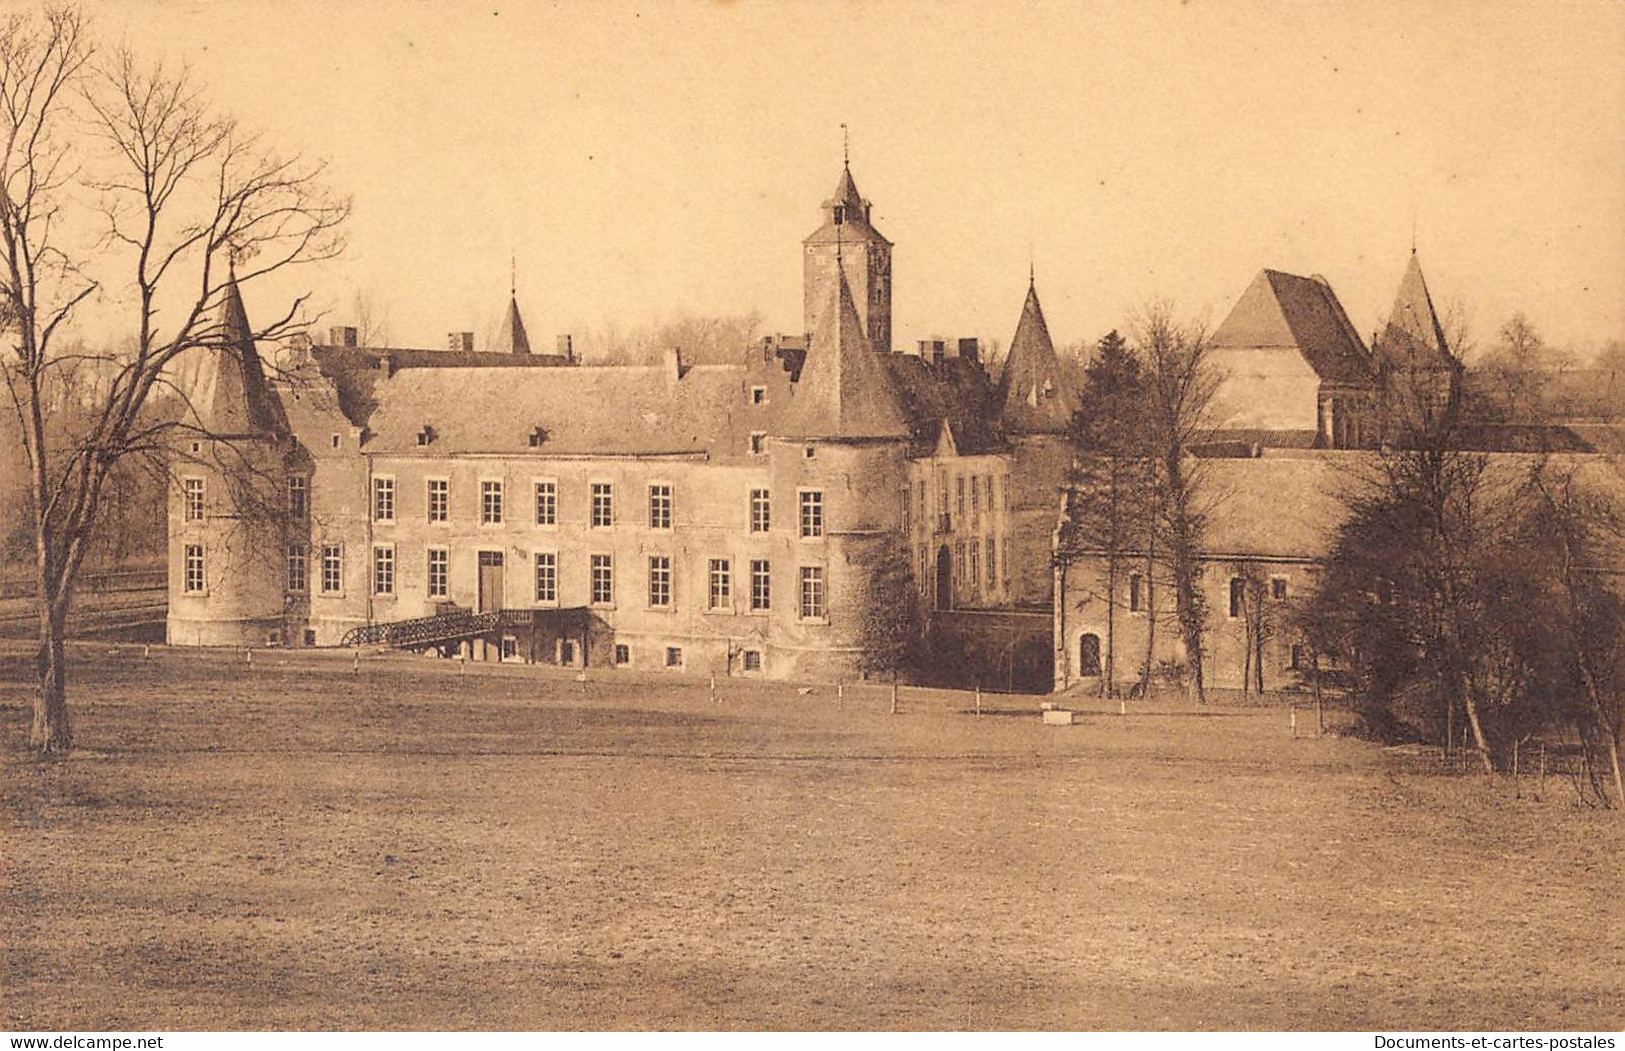 Série de X 28 Carte postale ancienne Belgique - Environs de Tongres Château des Vieux Joncs